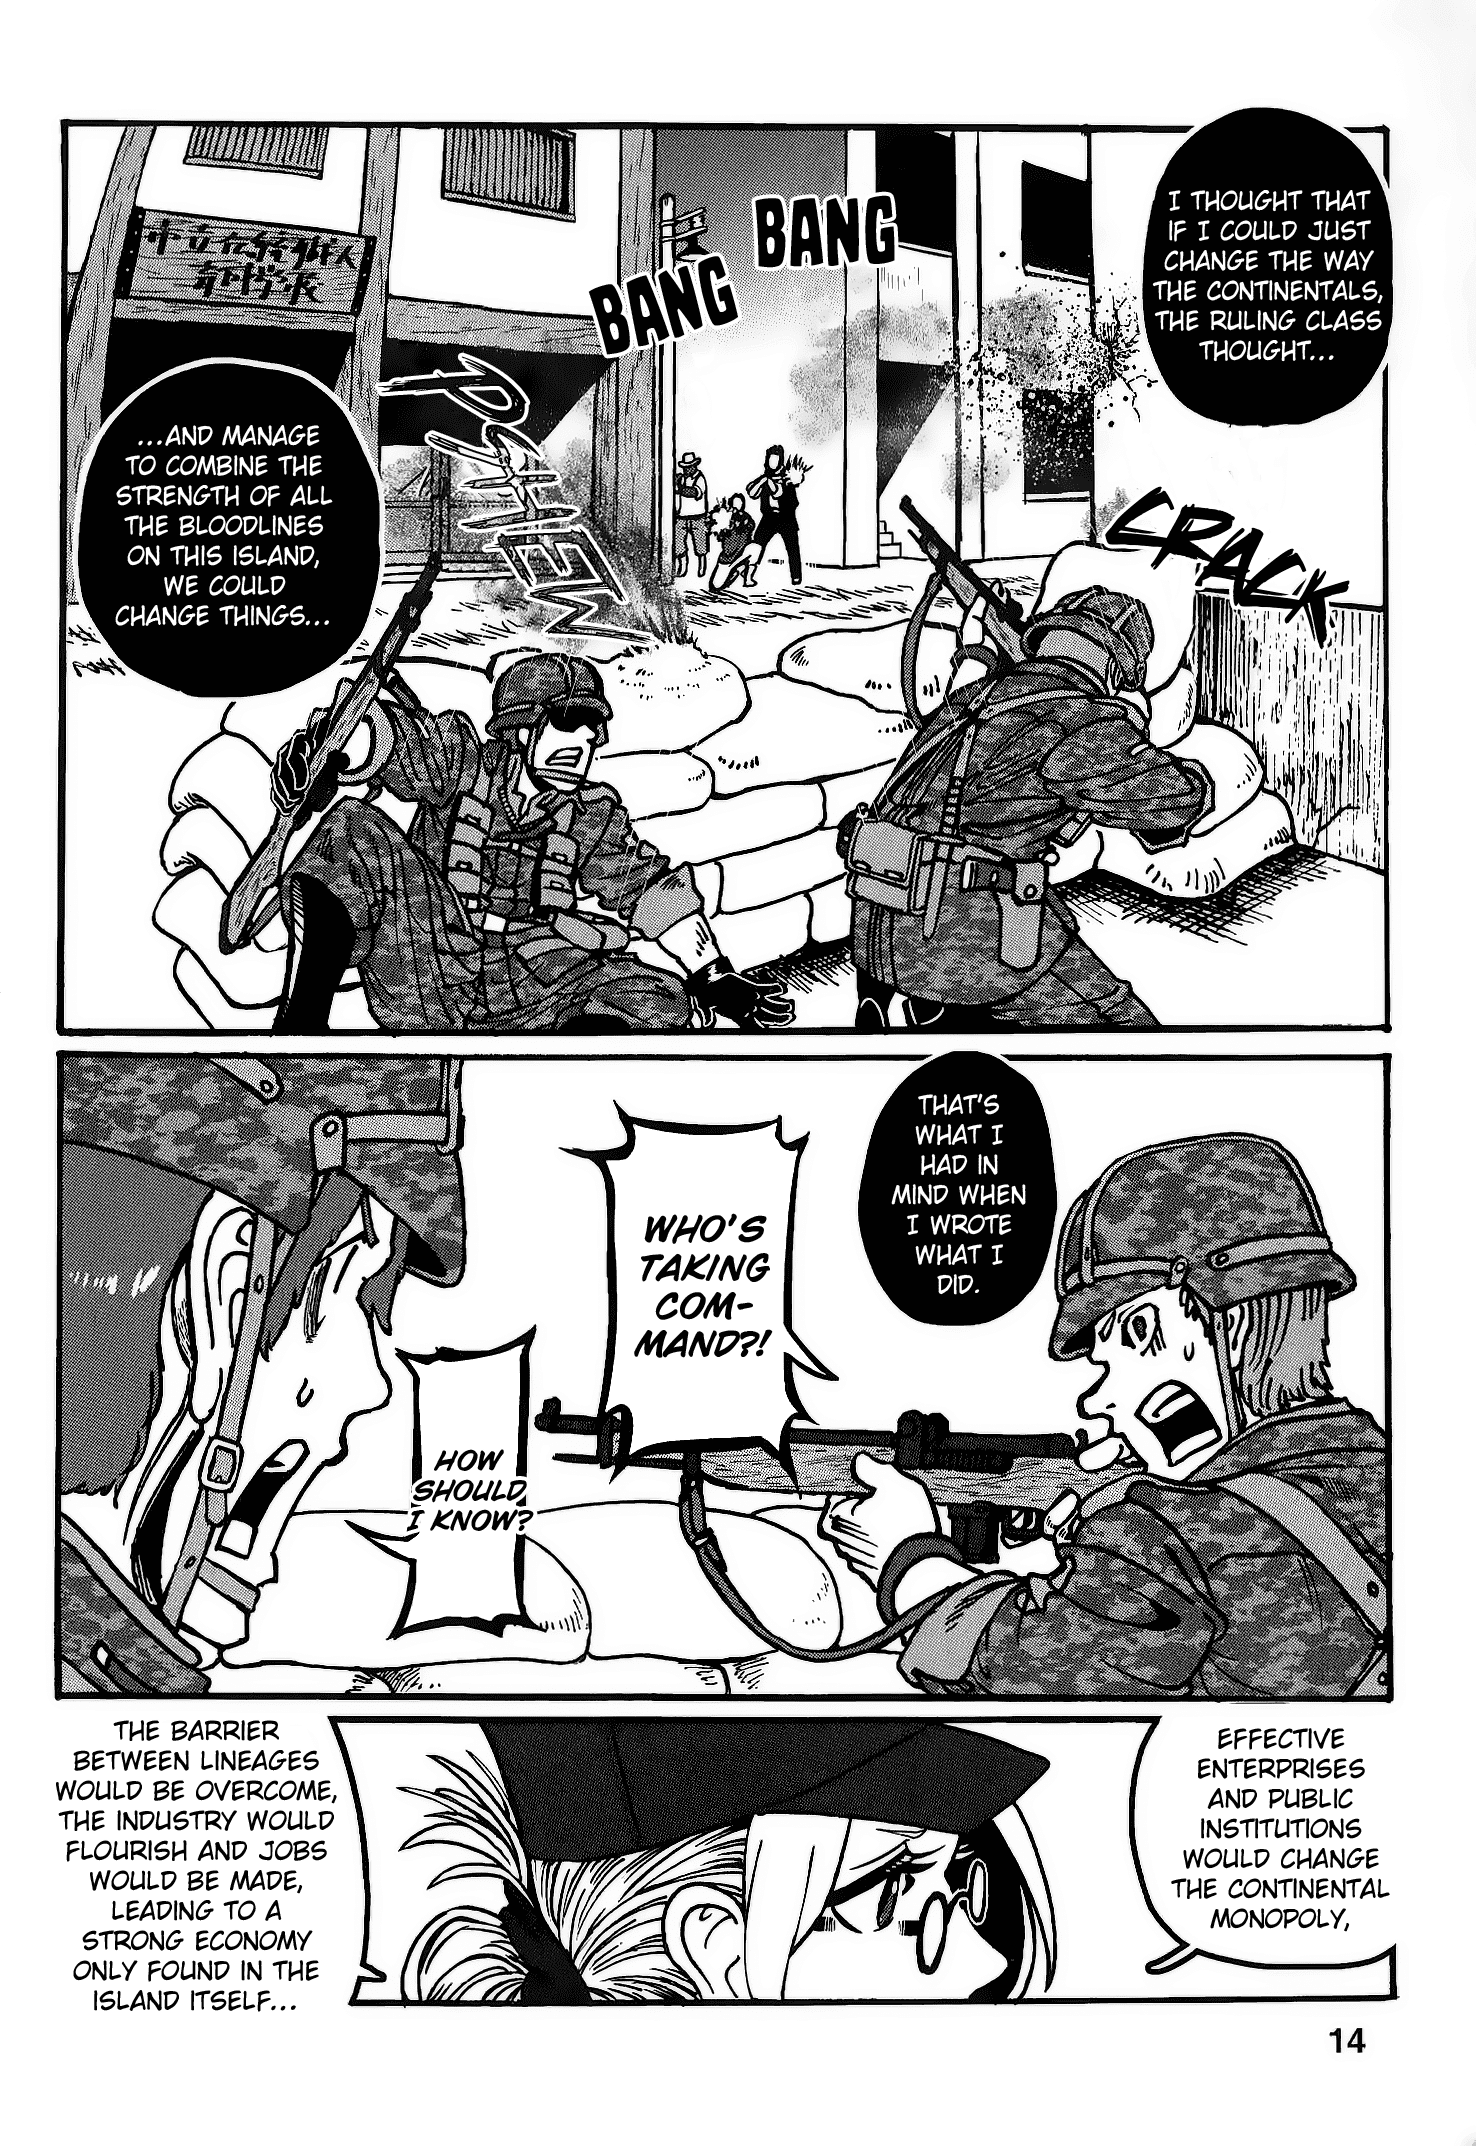 Groundless - Sekigan No Sogekihei - 22 page 18-384eaf58